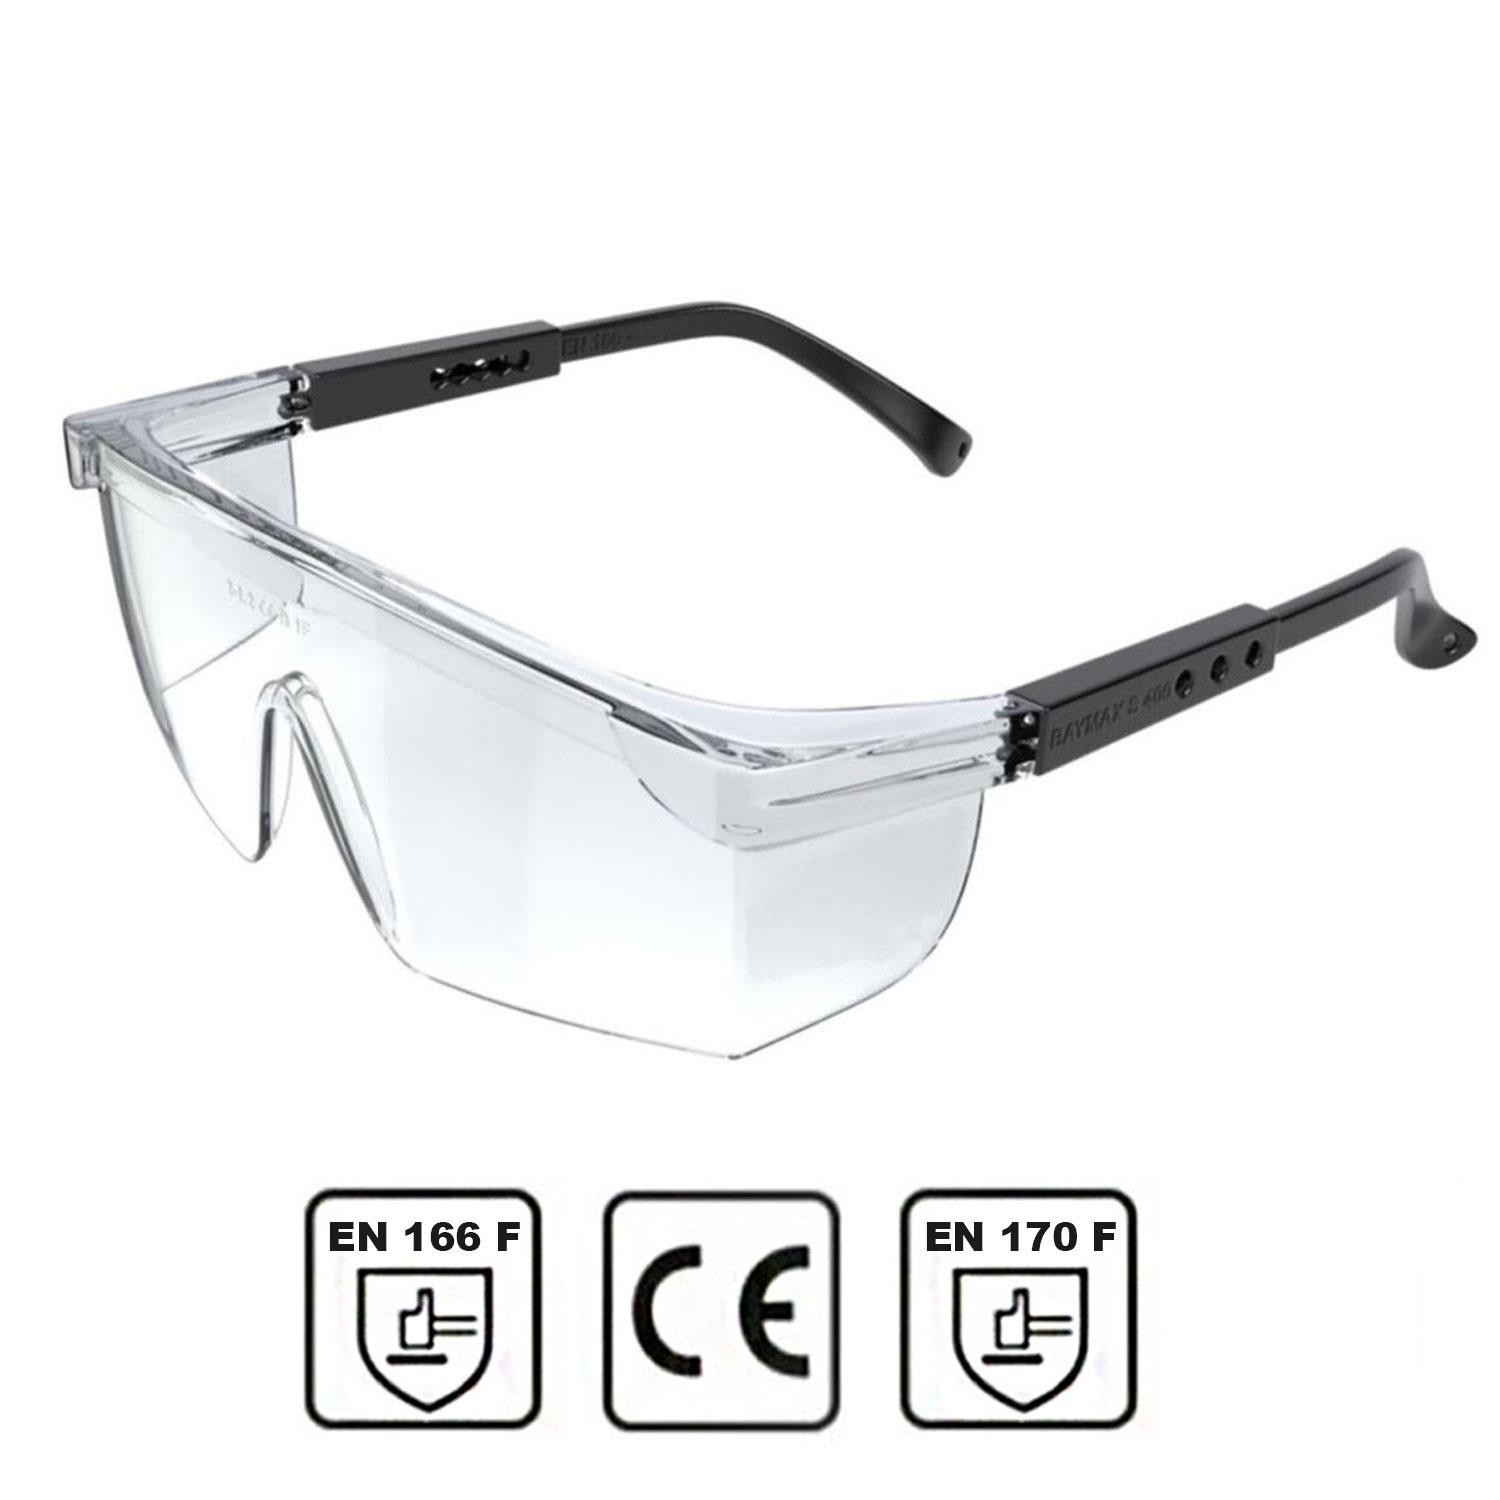 Baymax İş Güvenlik Güvenliği Gözlüğü Kulak Ayarlı Koruyucu Gözlük Şeffaf S400 Toptan Satış